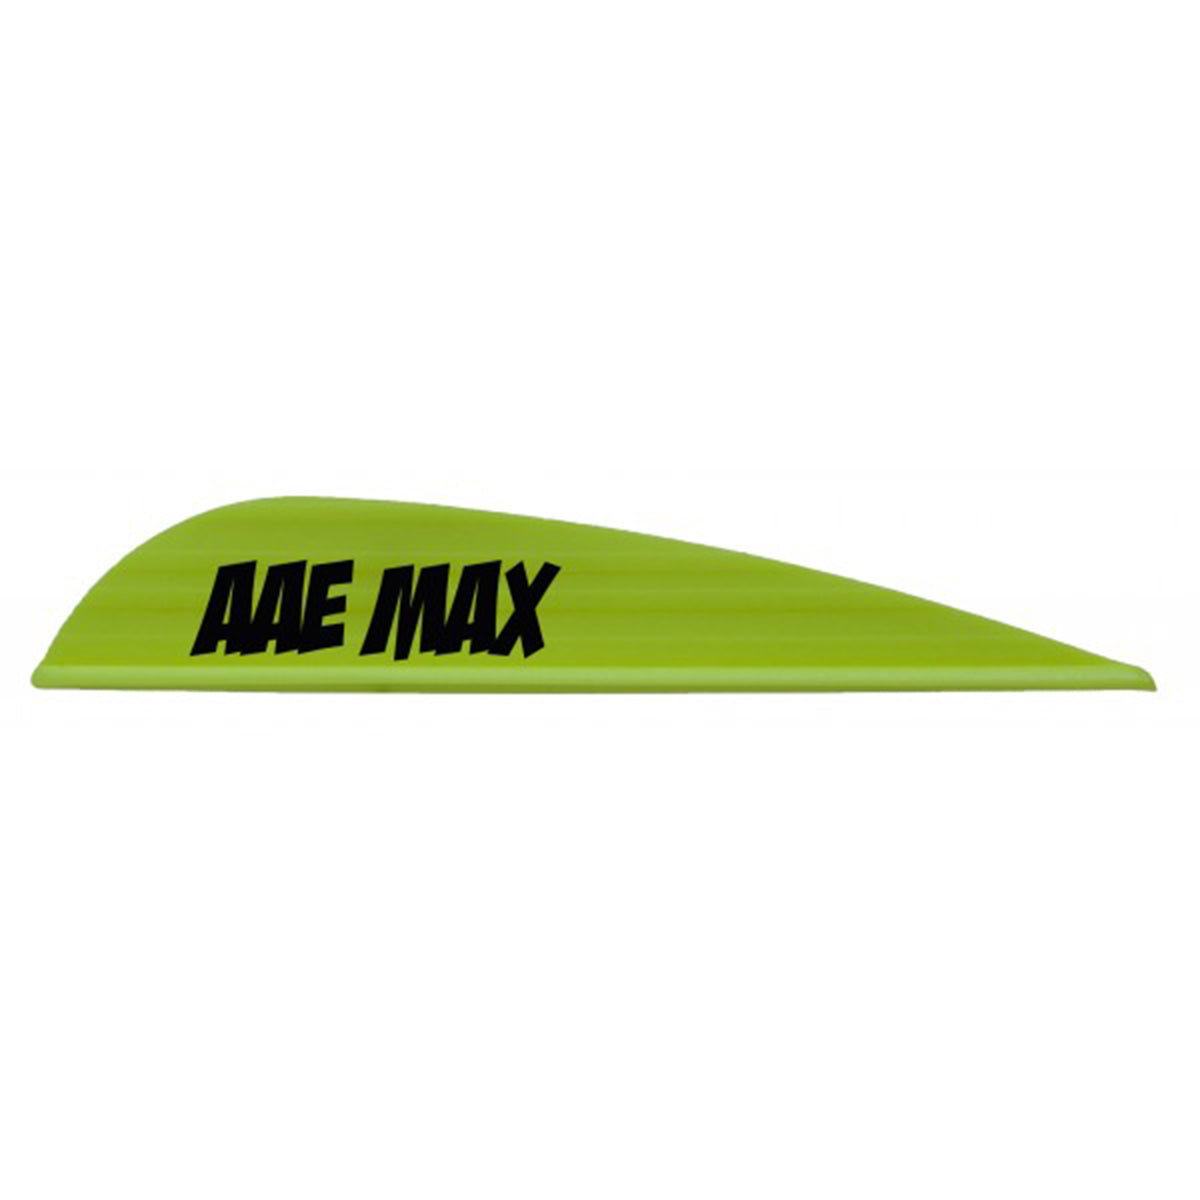 AAE Max Stealth Arrow Vanes - 50 Pack